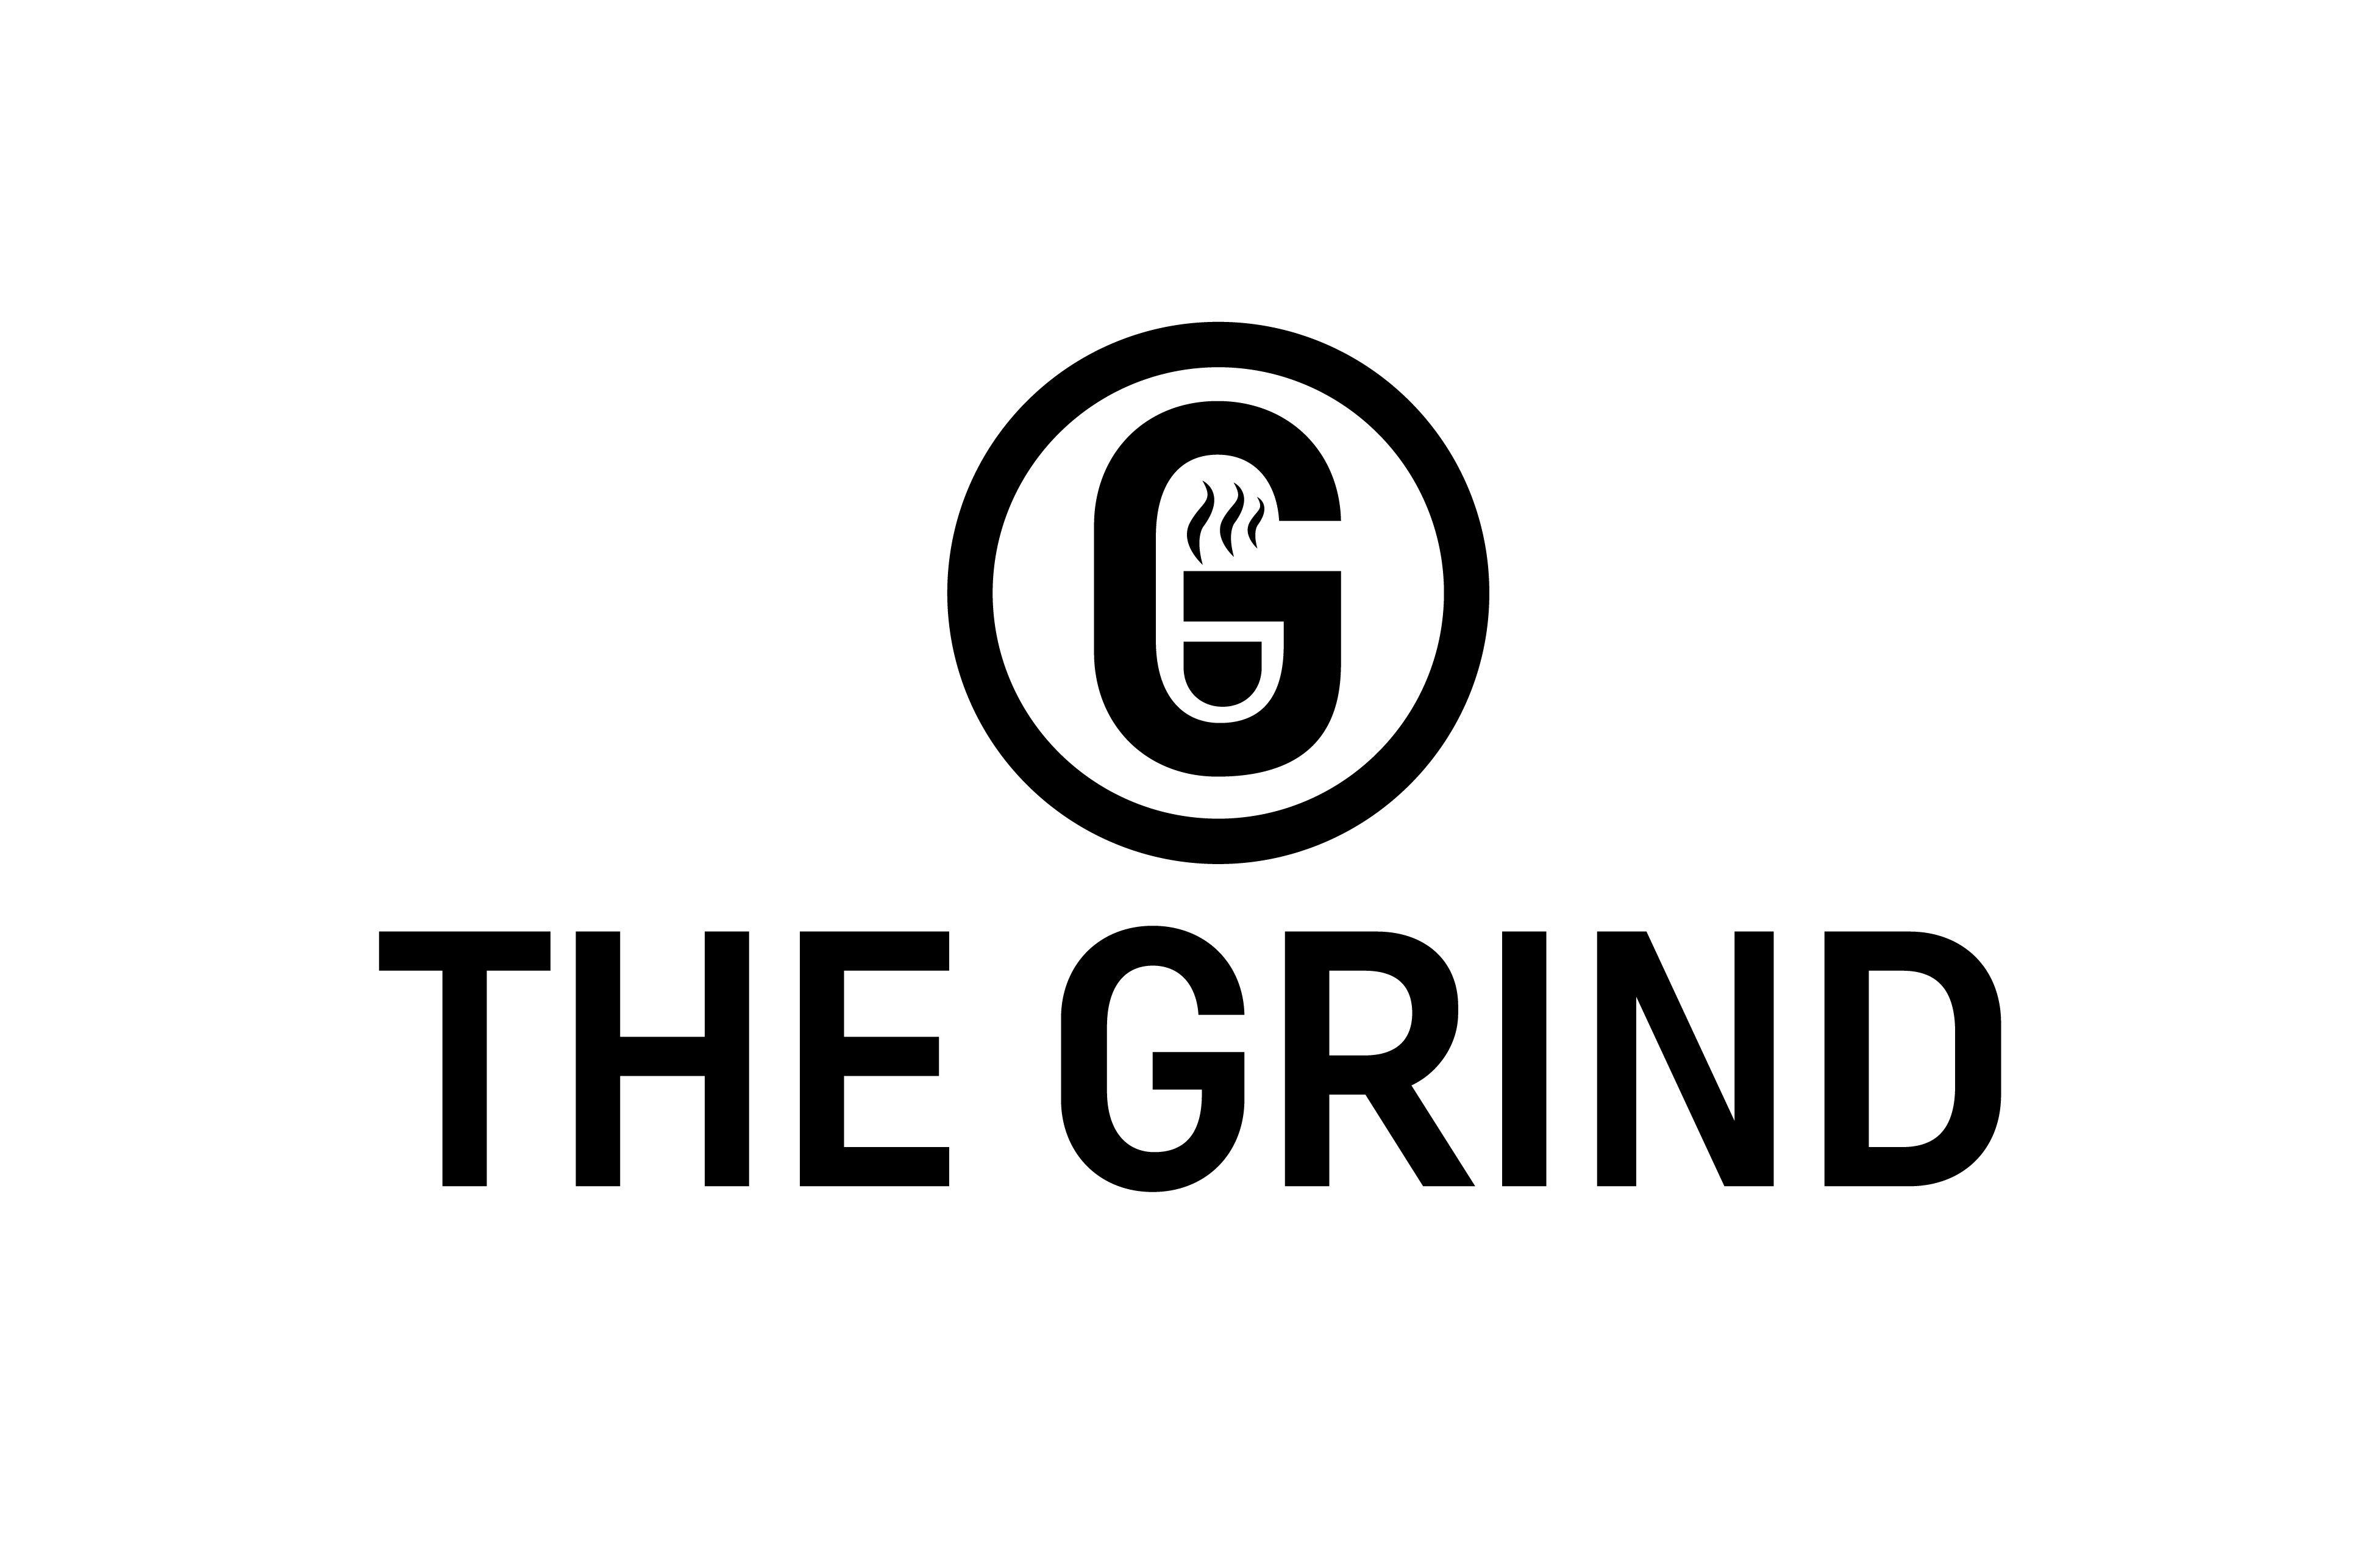 Grind Logo - The Grind Logo Challenge - Design Ideas